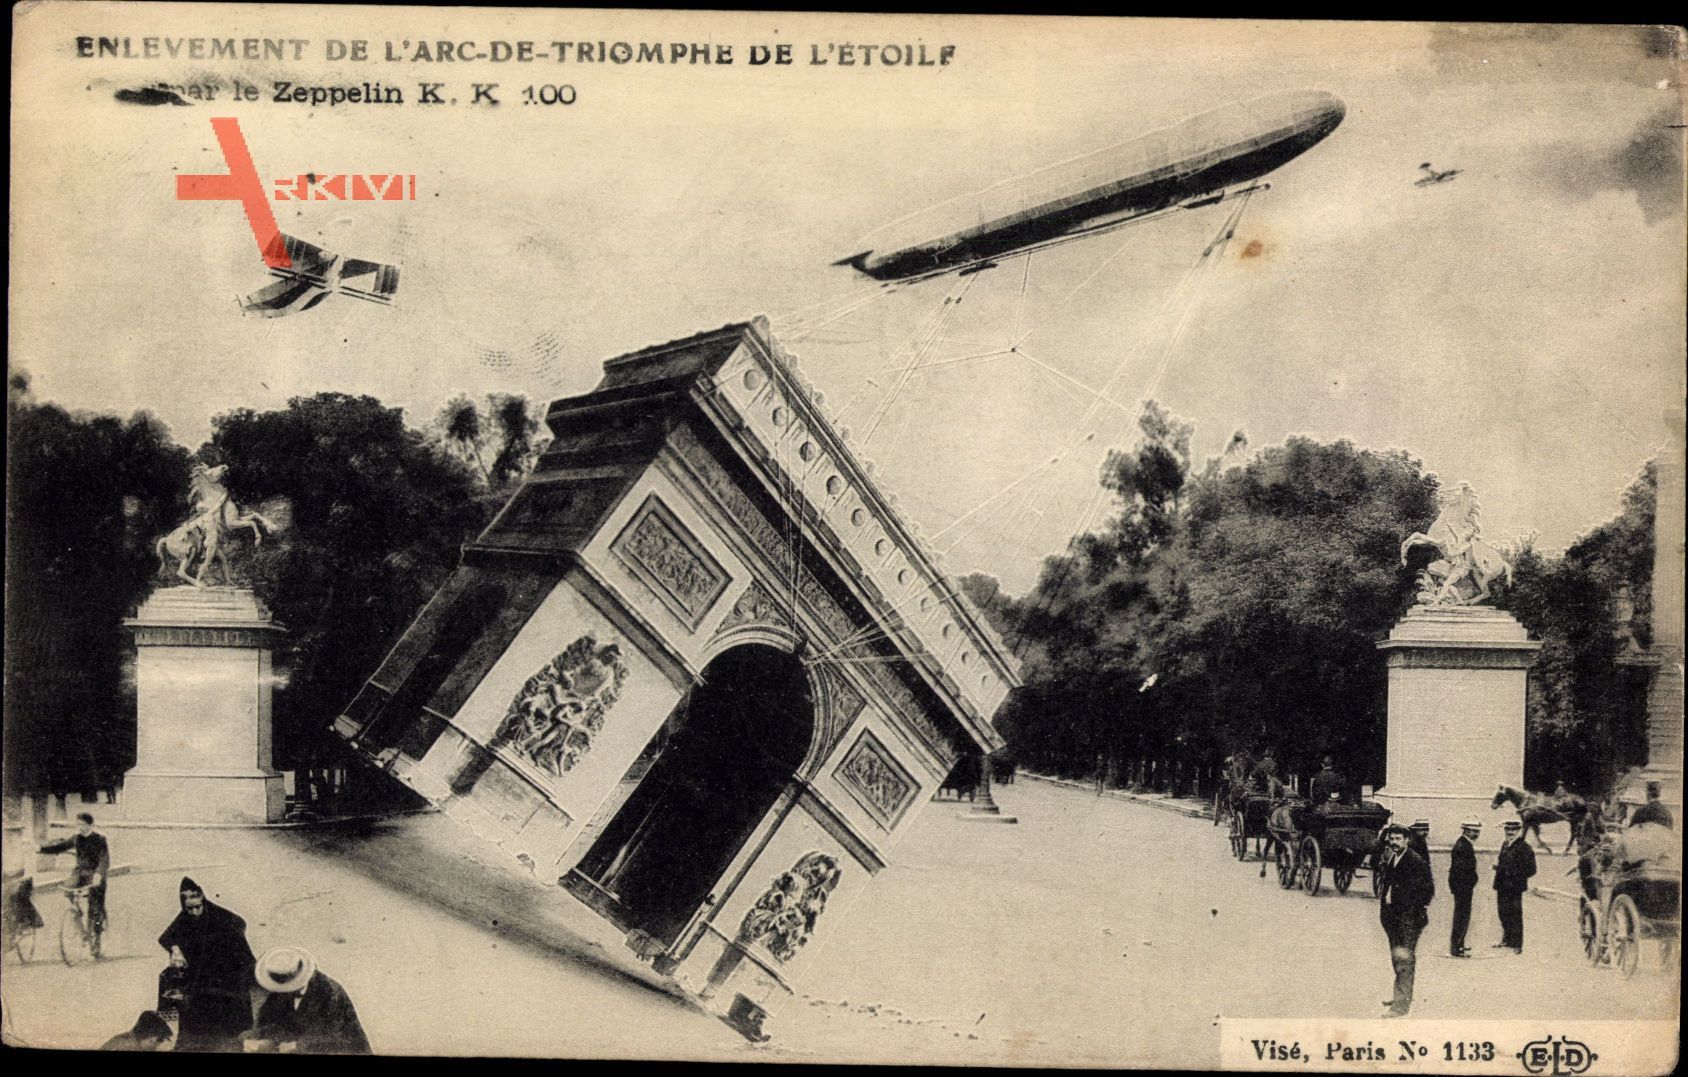 Paris, Enlevement de lArc de Triomphe de lEtoile, Zeppelin, Fotomontage